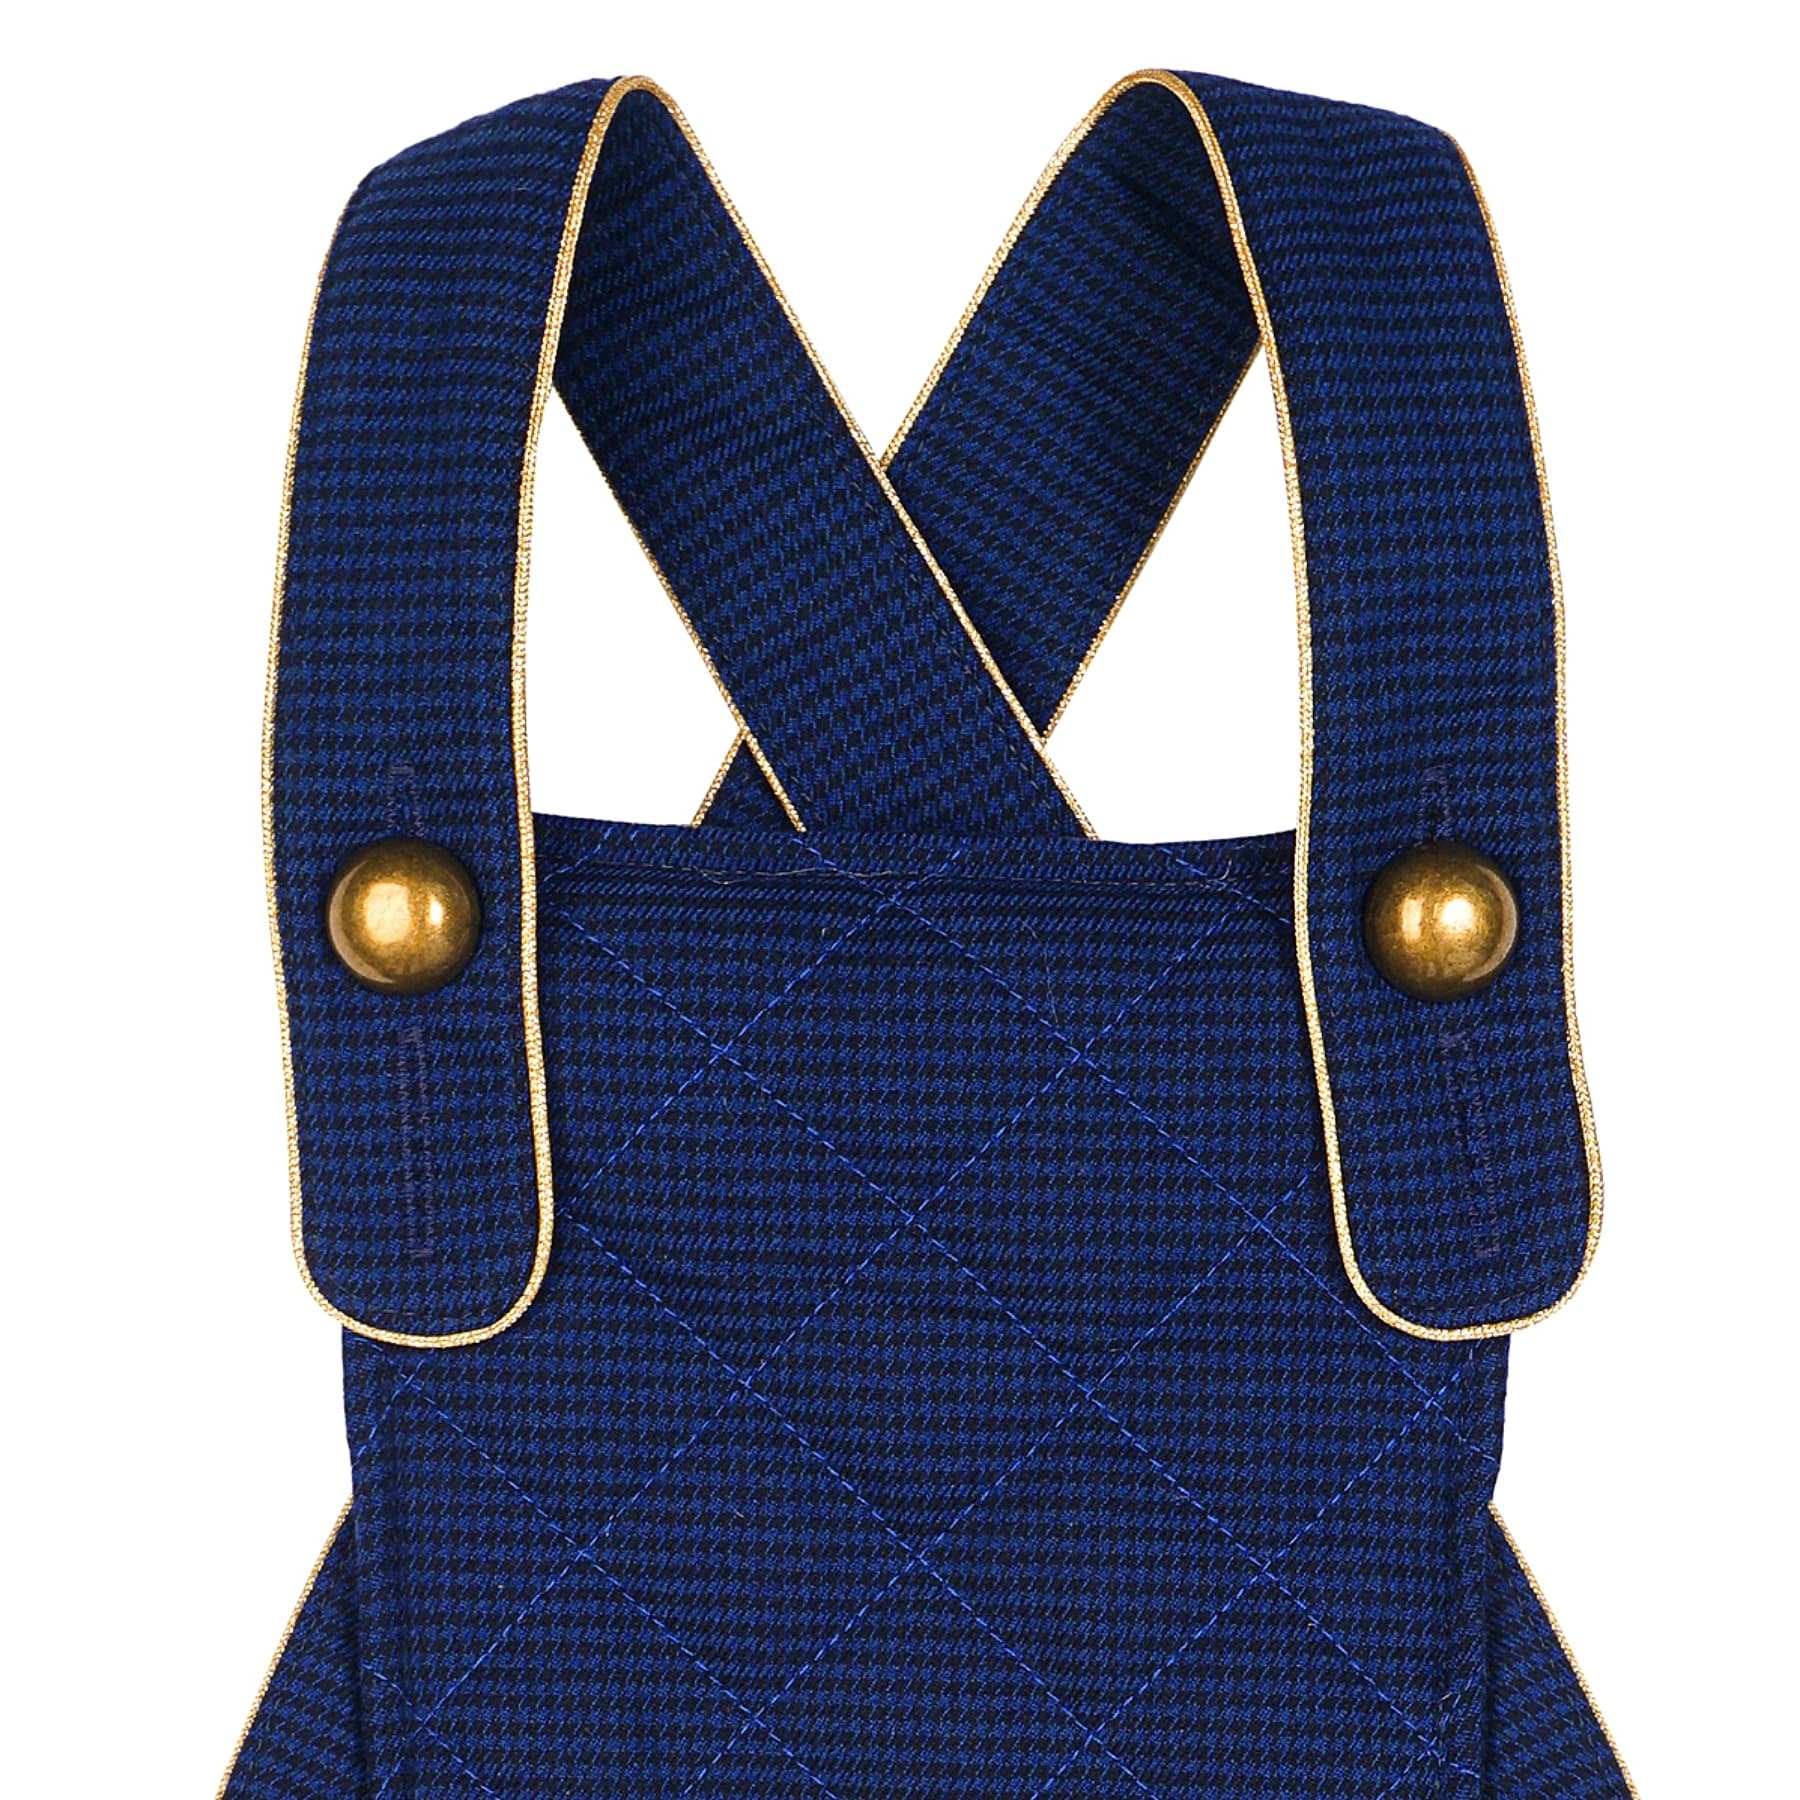 Combi short en laine pied de poule bleu marine avec biais doré pour filles et fillettes de la marque de mode pour enfants la faute a voltaire